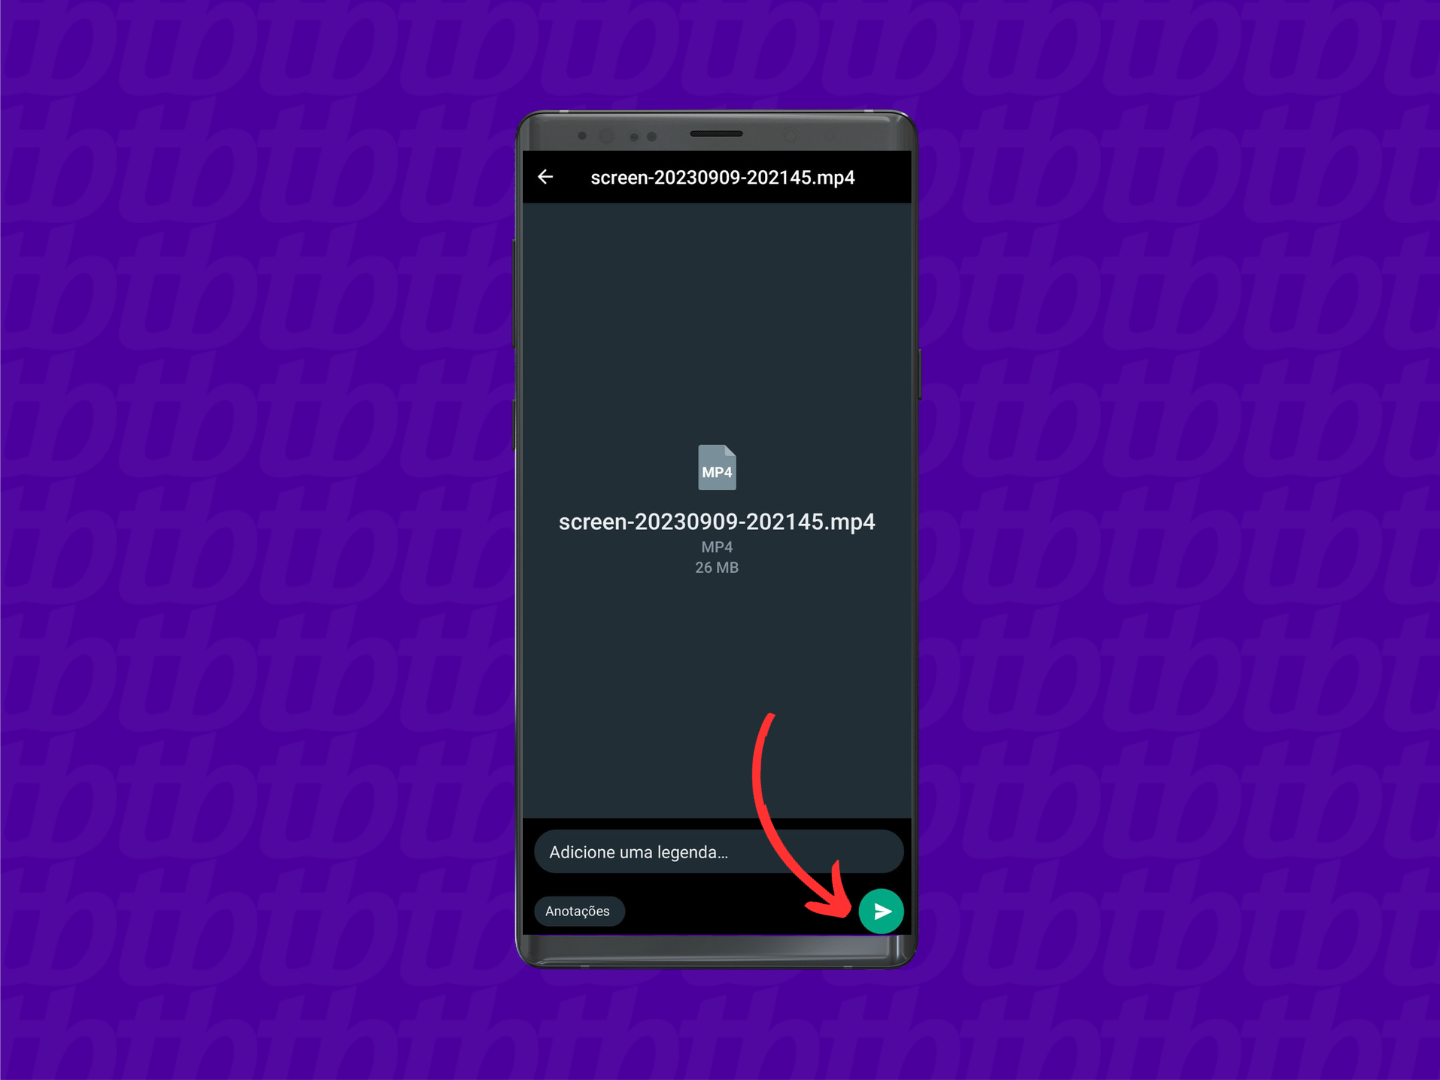 Mockup de celular Android com print de tela de uma conversa de WhatsApp. Uma seta indica o botão enviar, localizado no canto inferior direito.